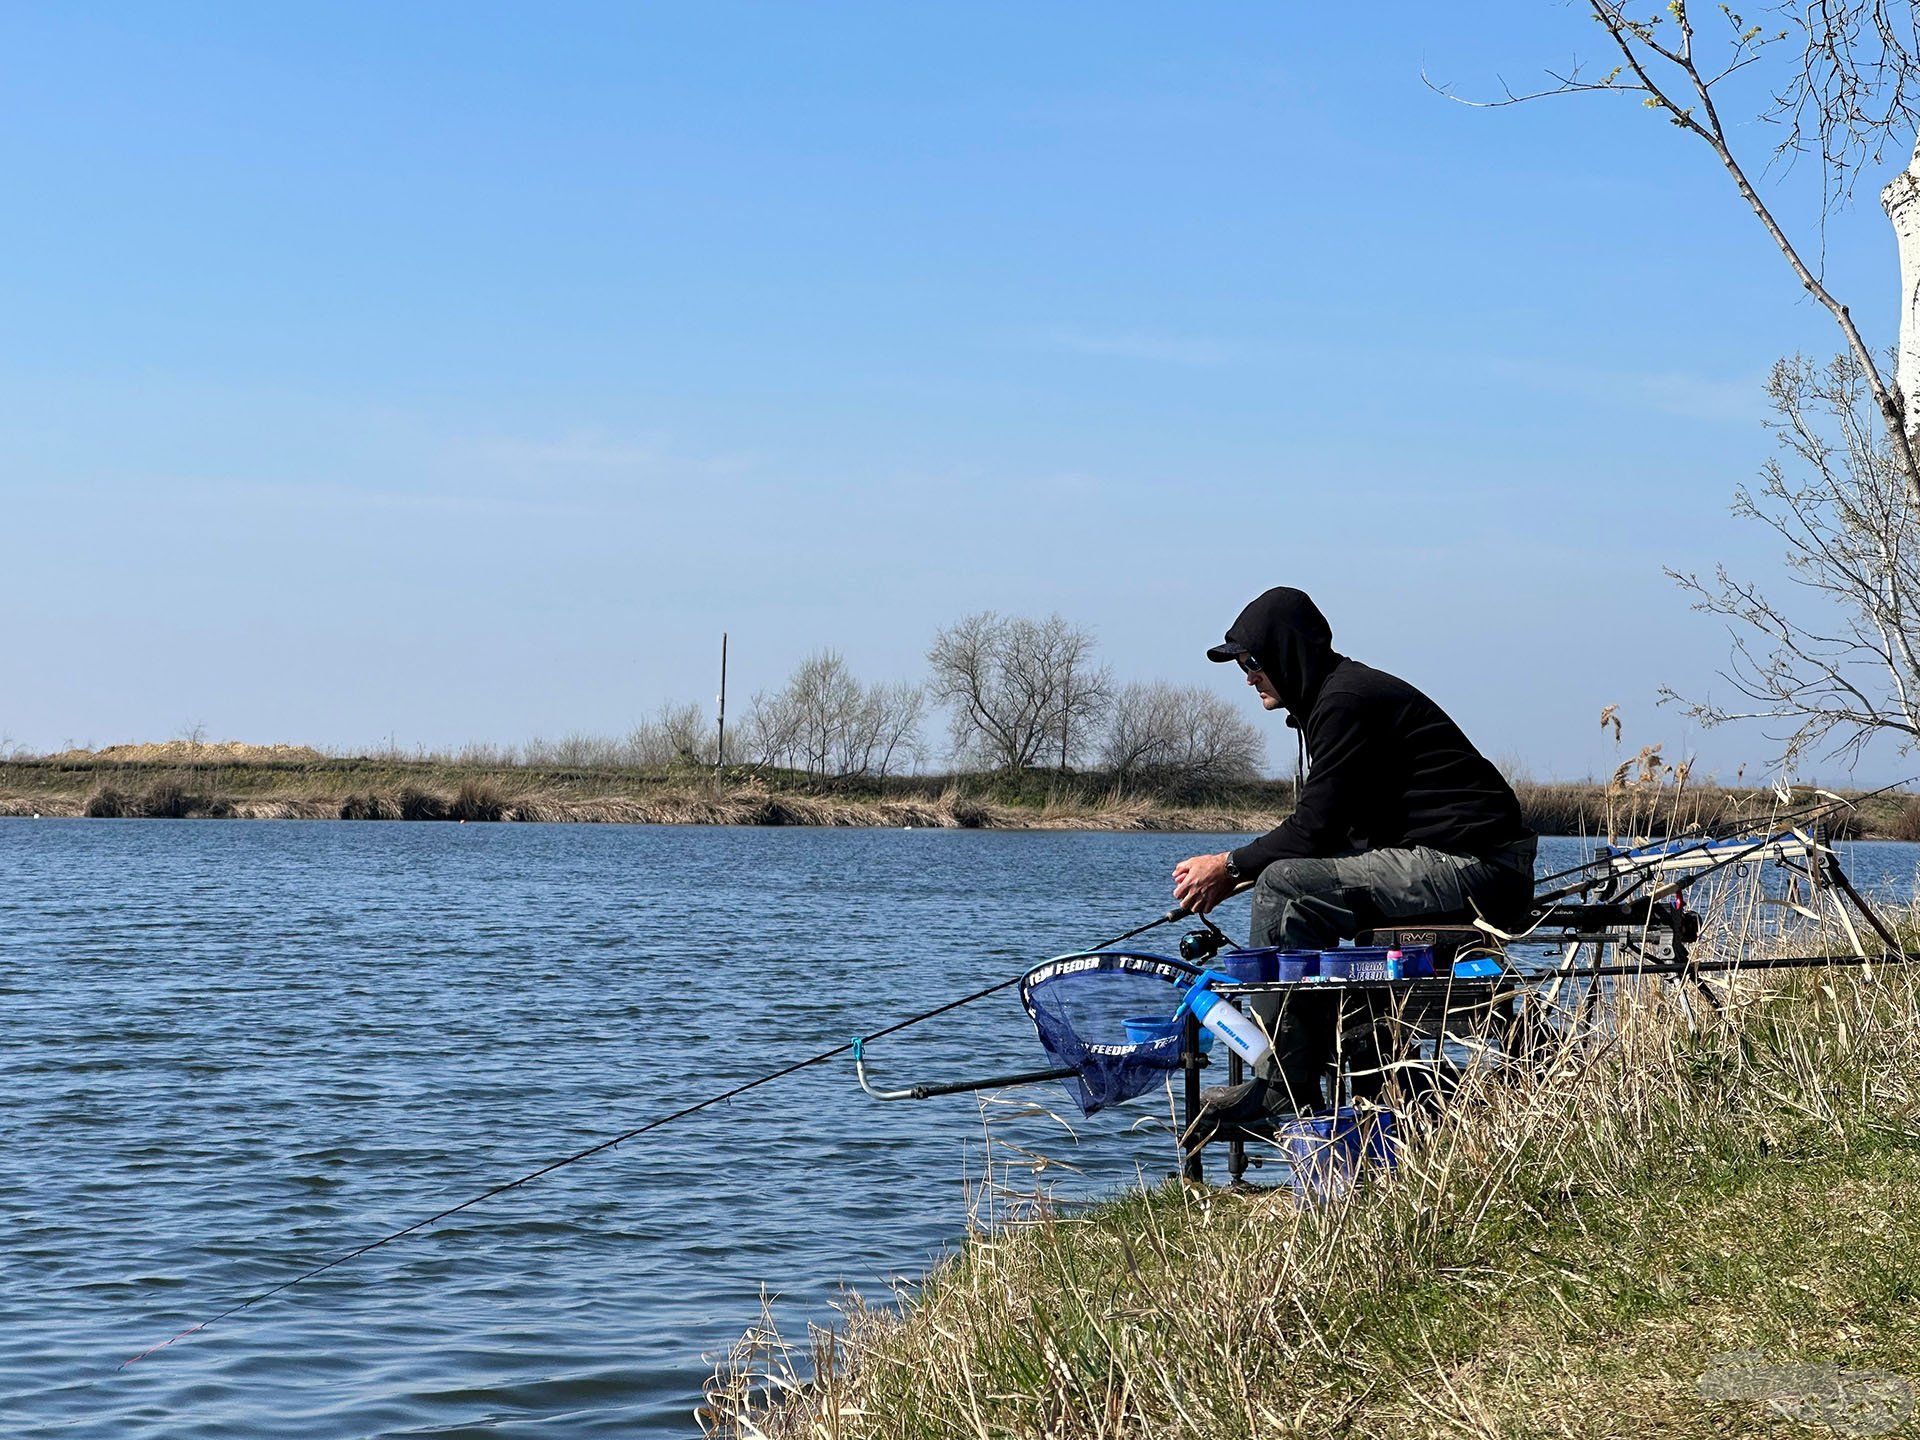 Remek tavaszi elfoglaltság a finomszerelékes horgászat